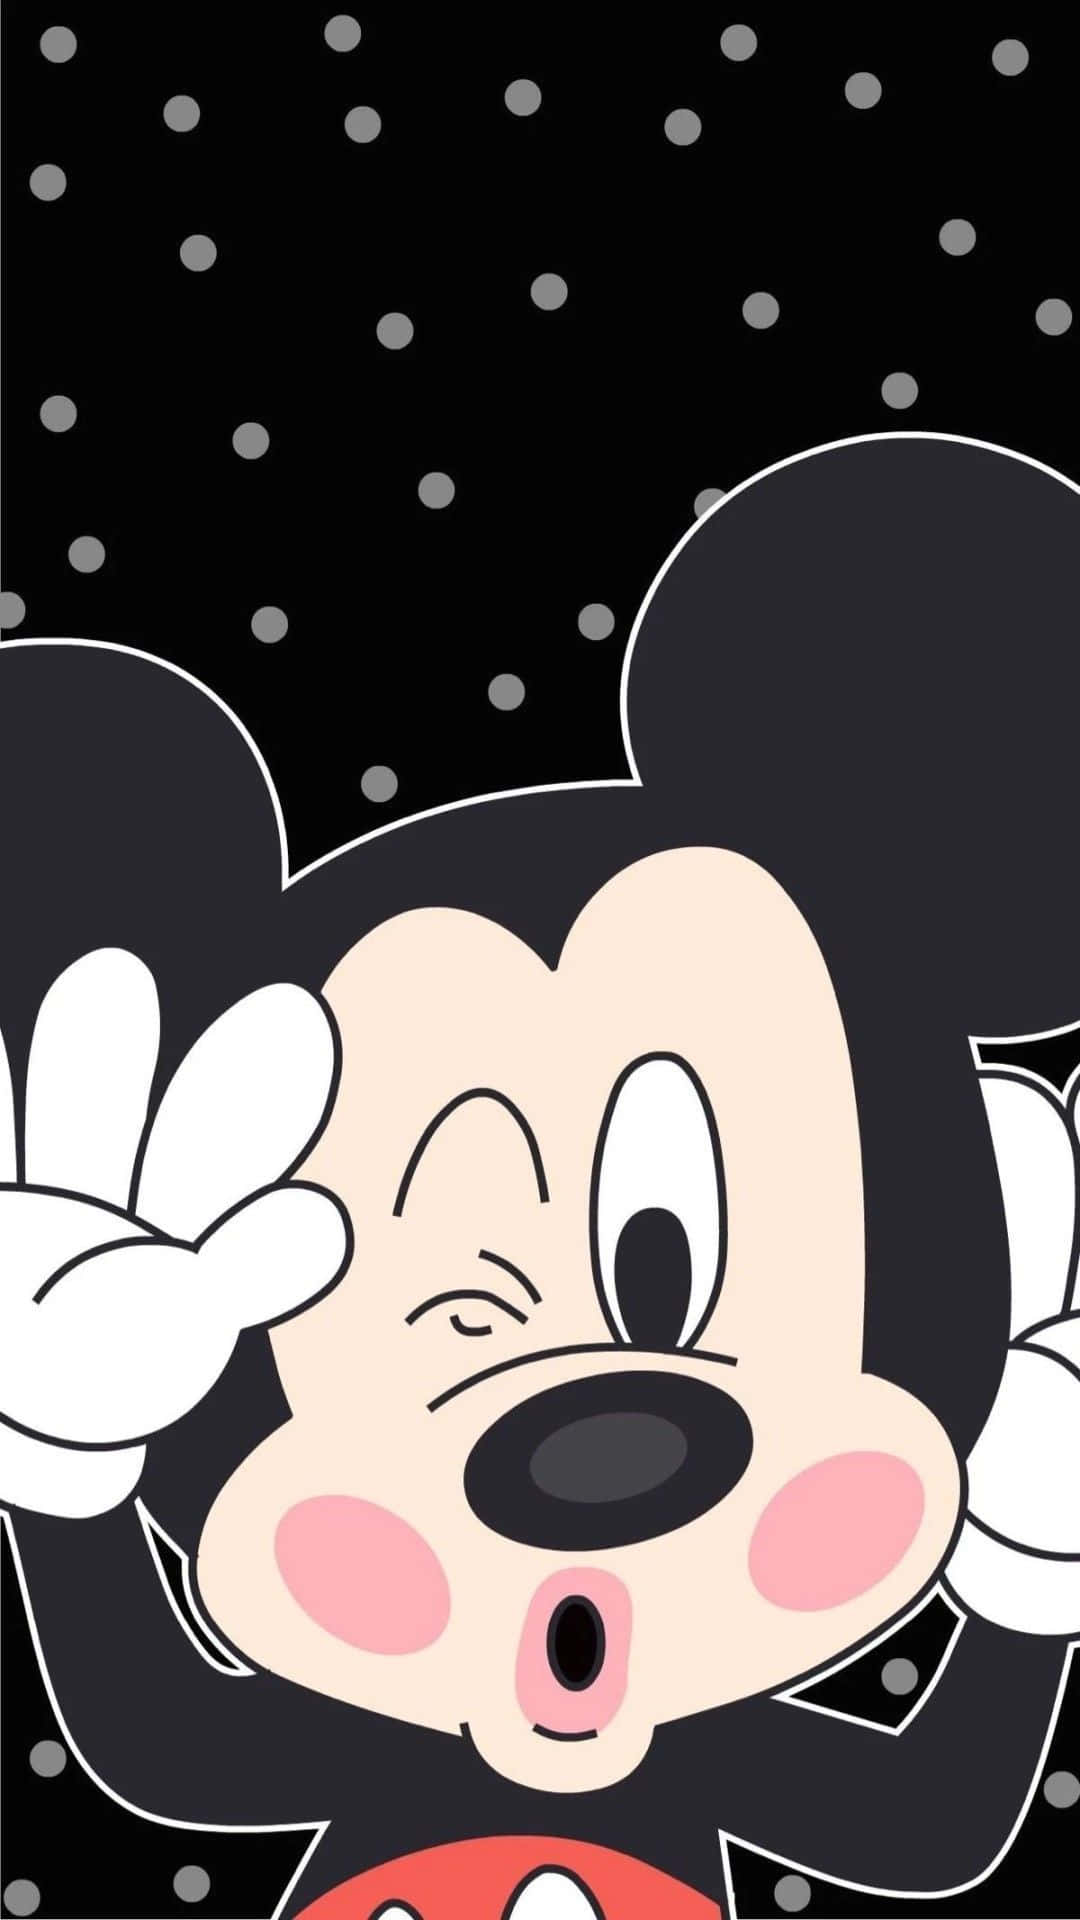 Den ikoniske og alt for søde Mickey Mouse vil altid få dig til at smile. Wallpaper